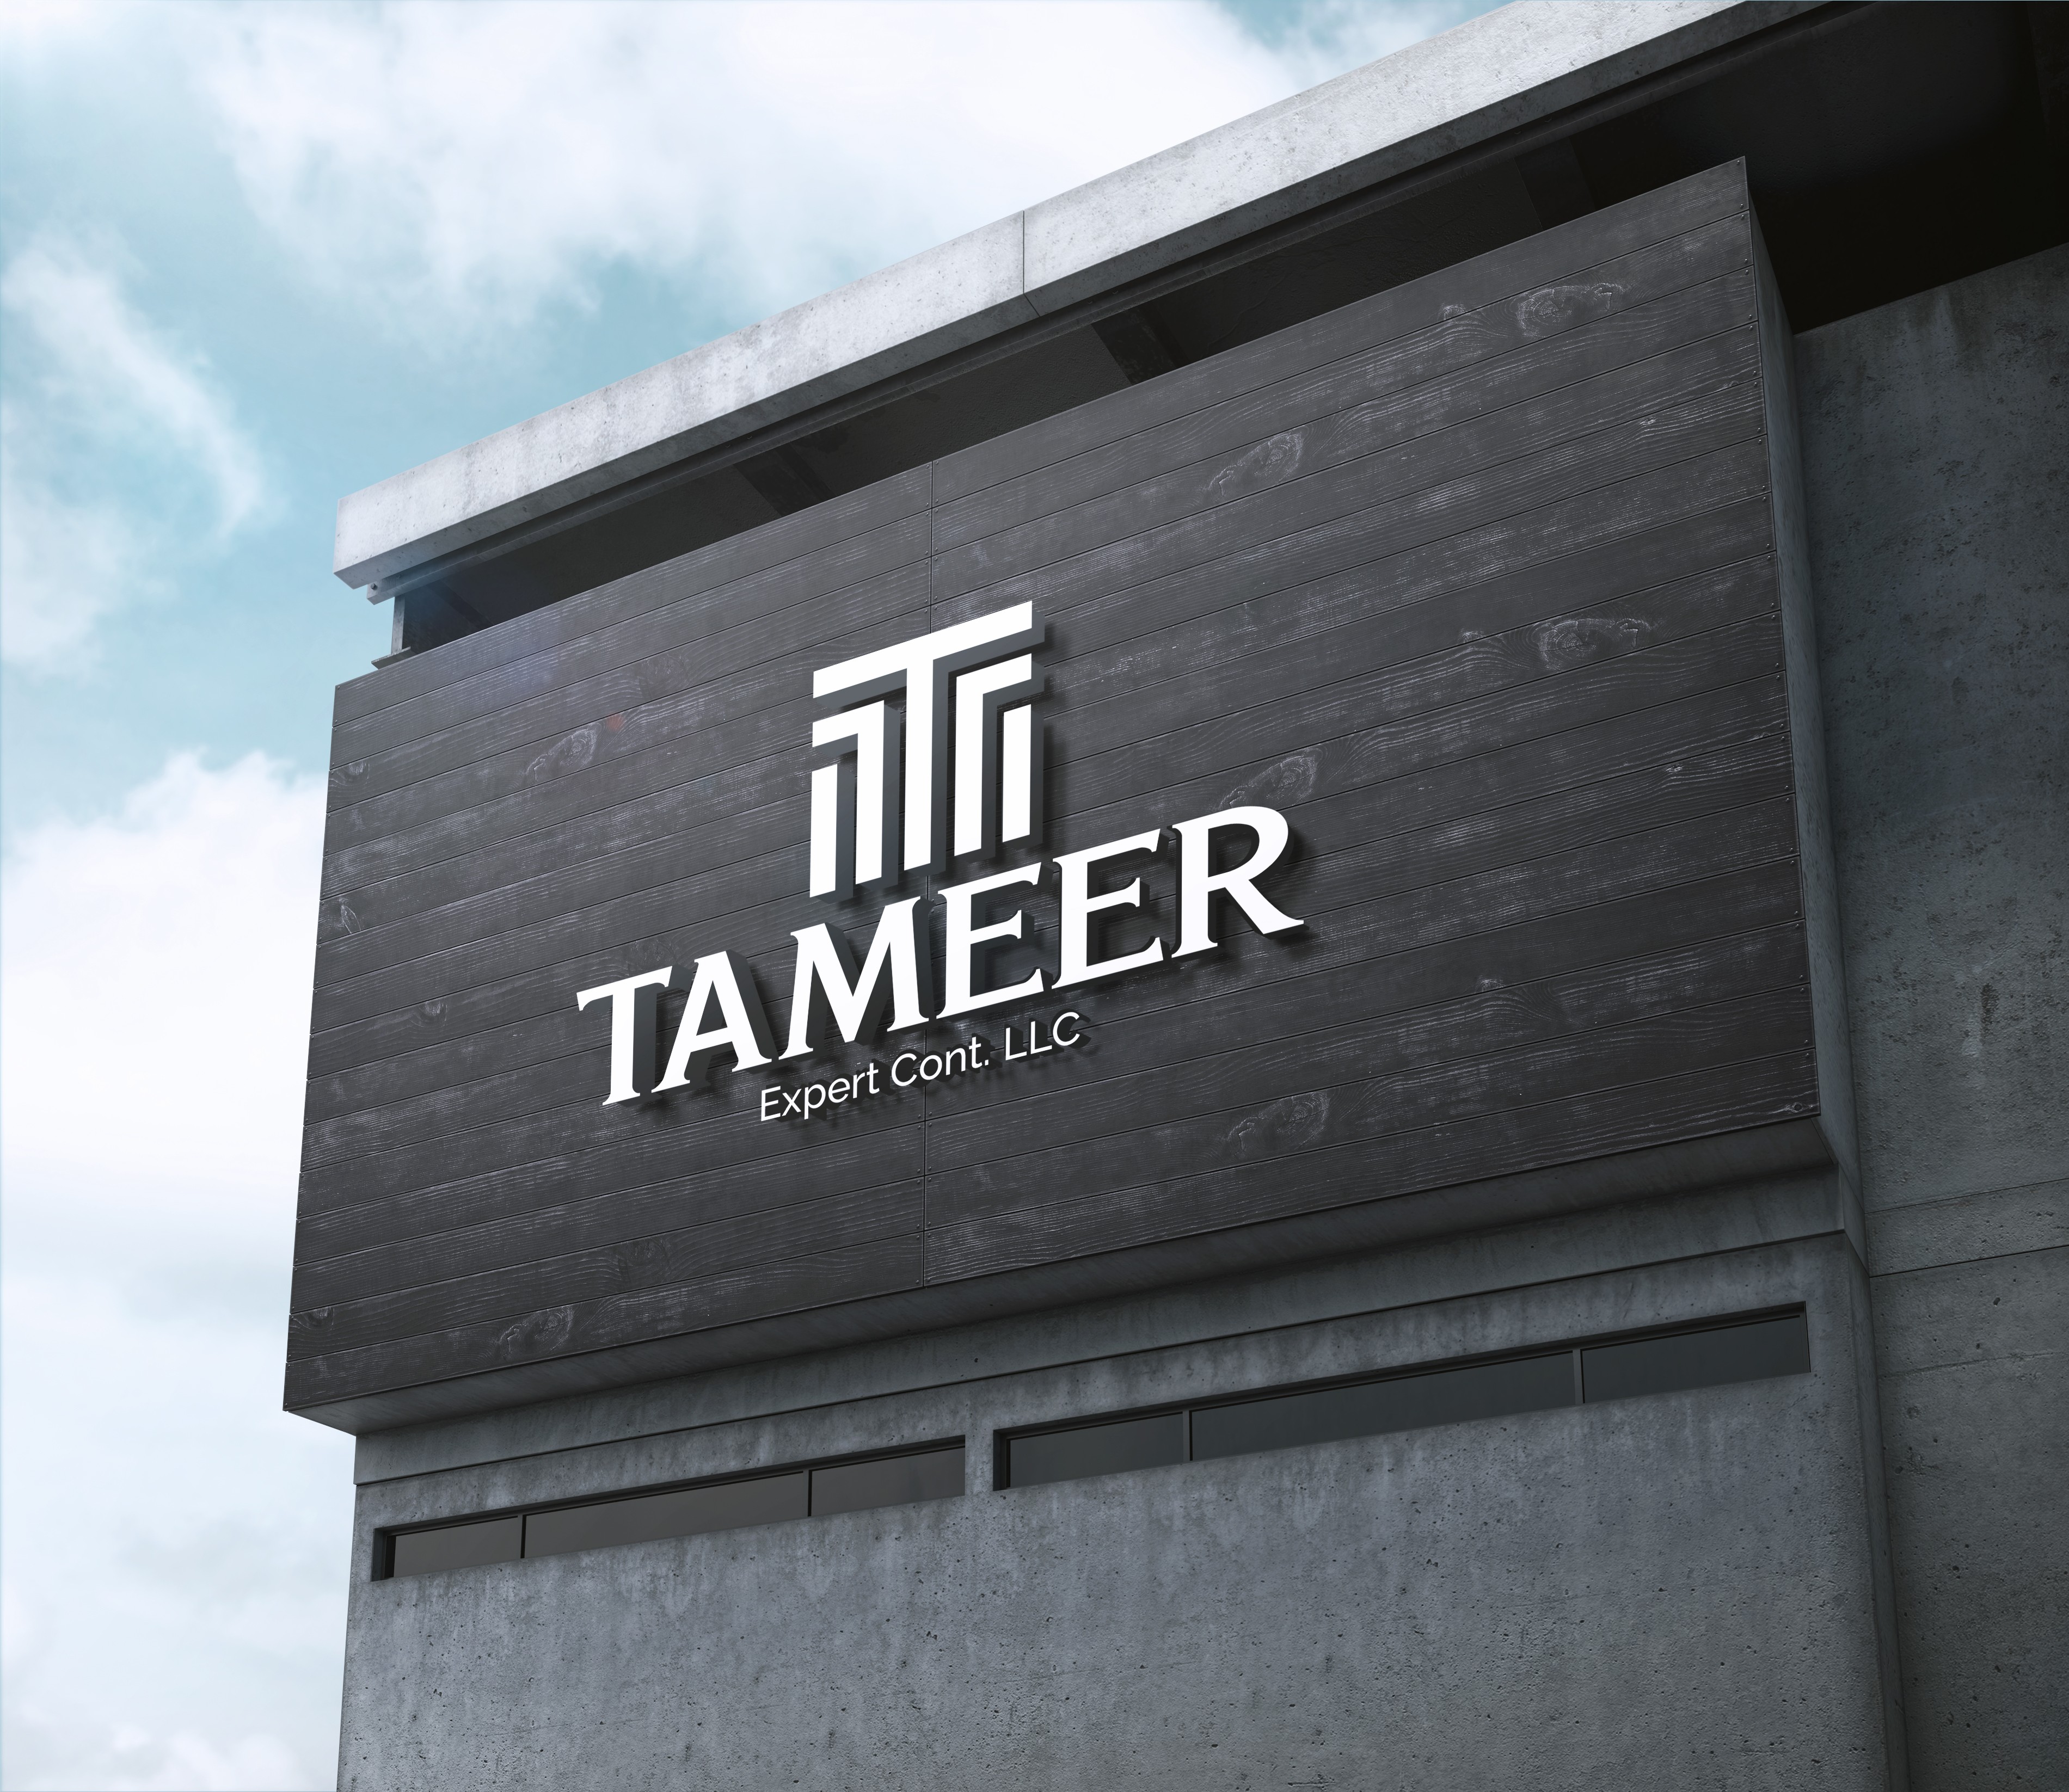 Tameer Expert Contracting | LinkedIn